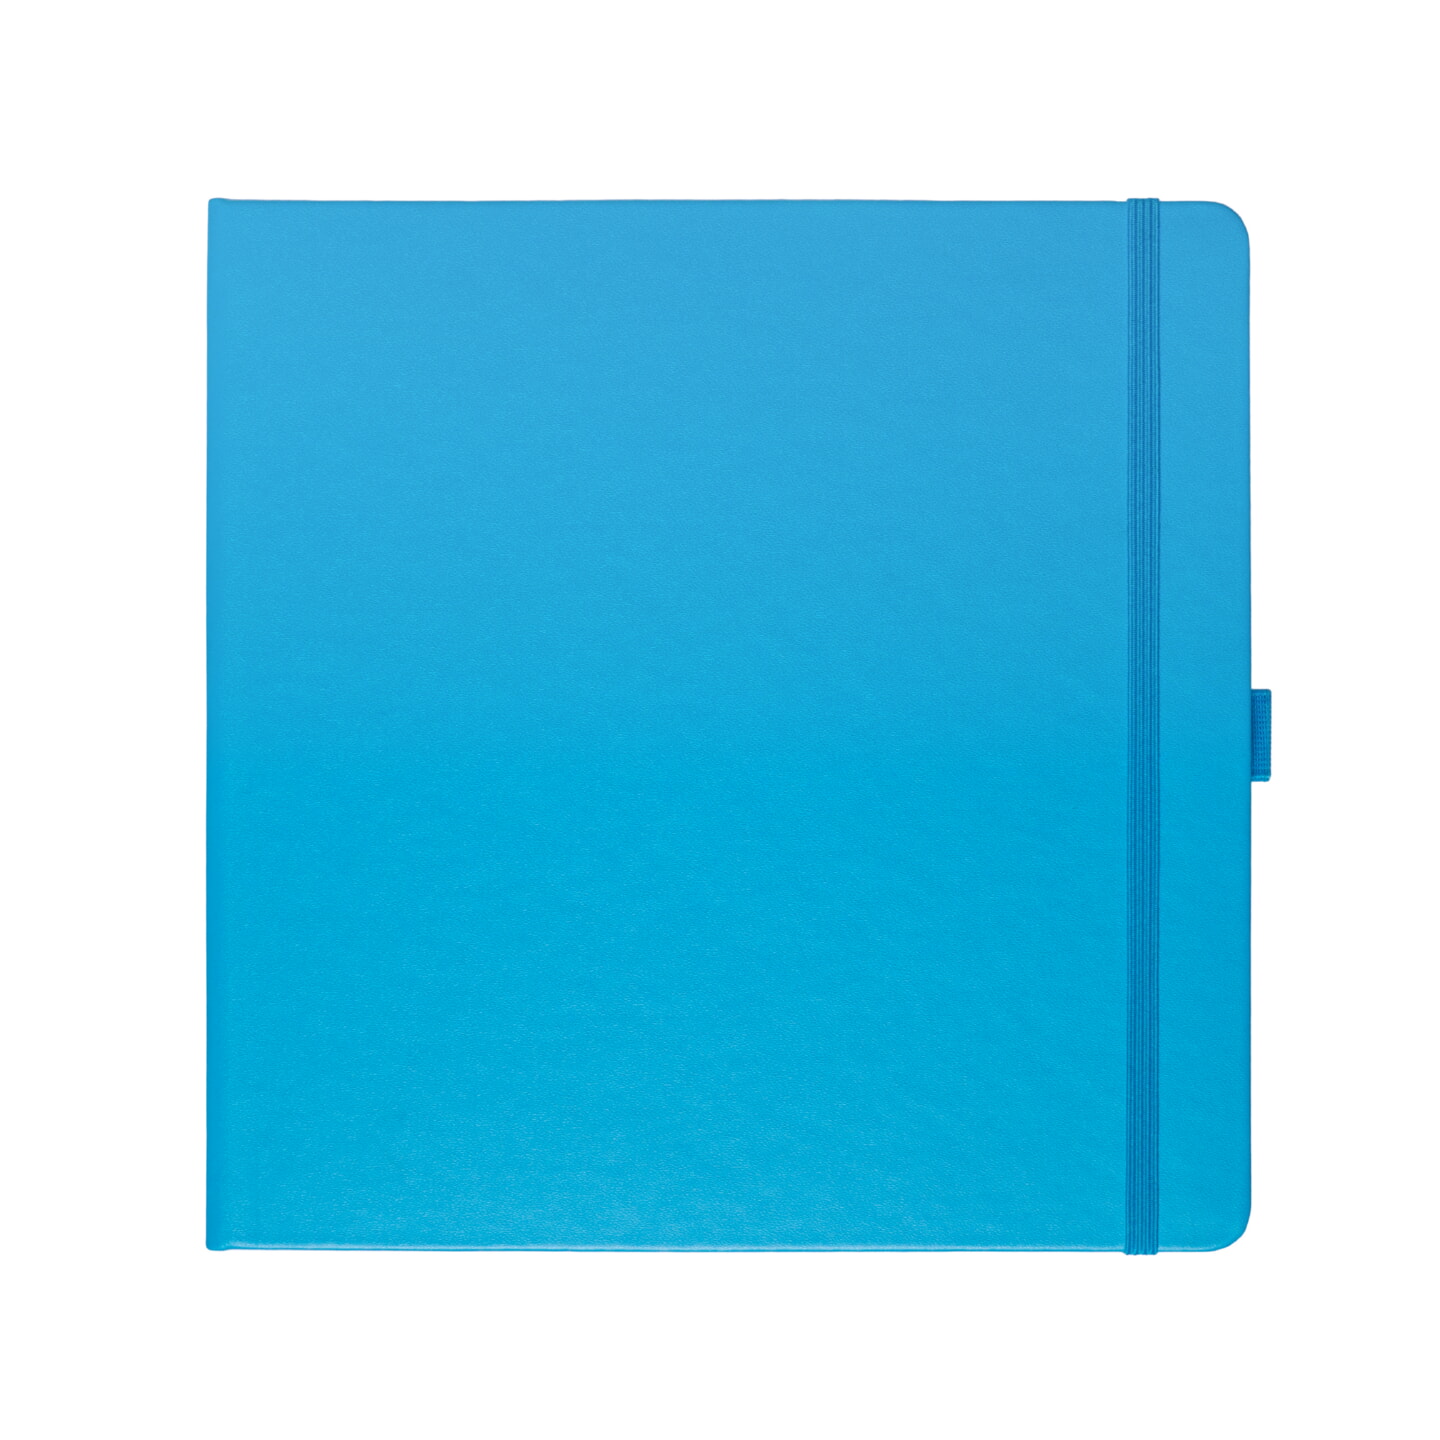 Блокнот для зарисовок Sketchmarker 140г/кв.м 20*20cм 80л твердая обложка Синий Карибский